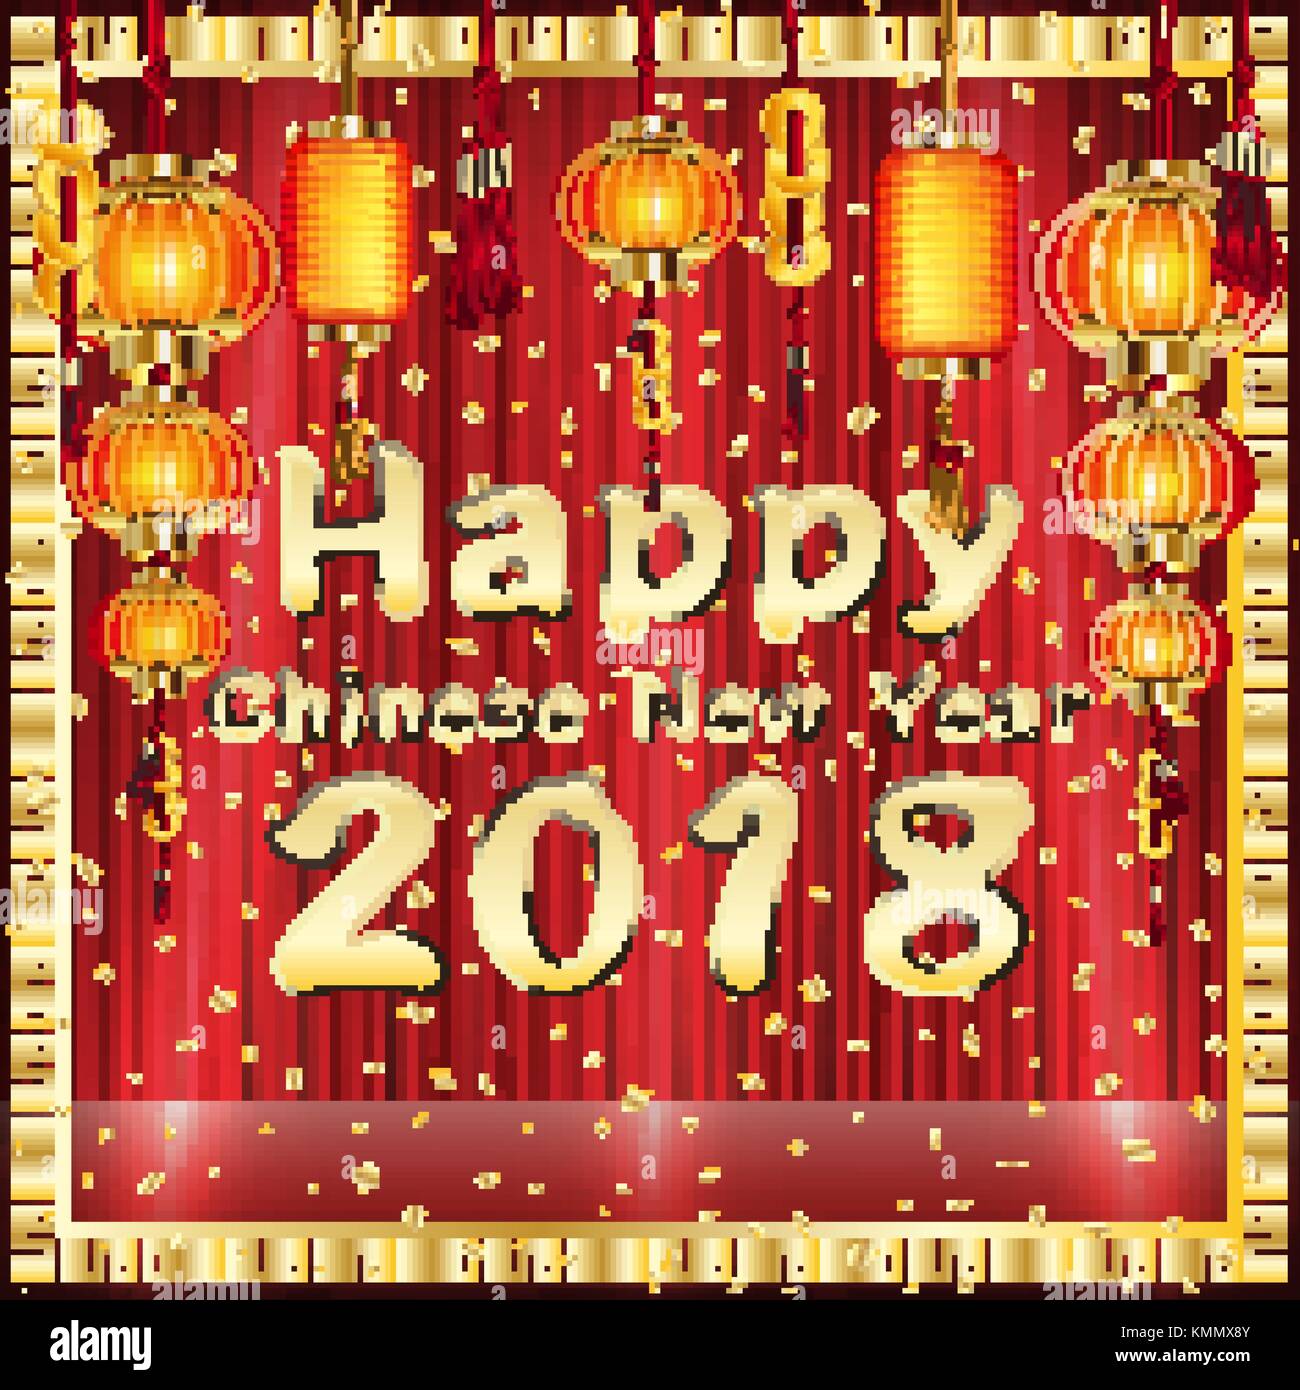 Joyeux Nouvel An chinois 2018 le rideau rouge Illustration de Vecteur